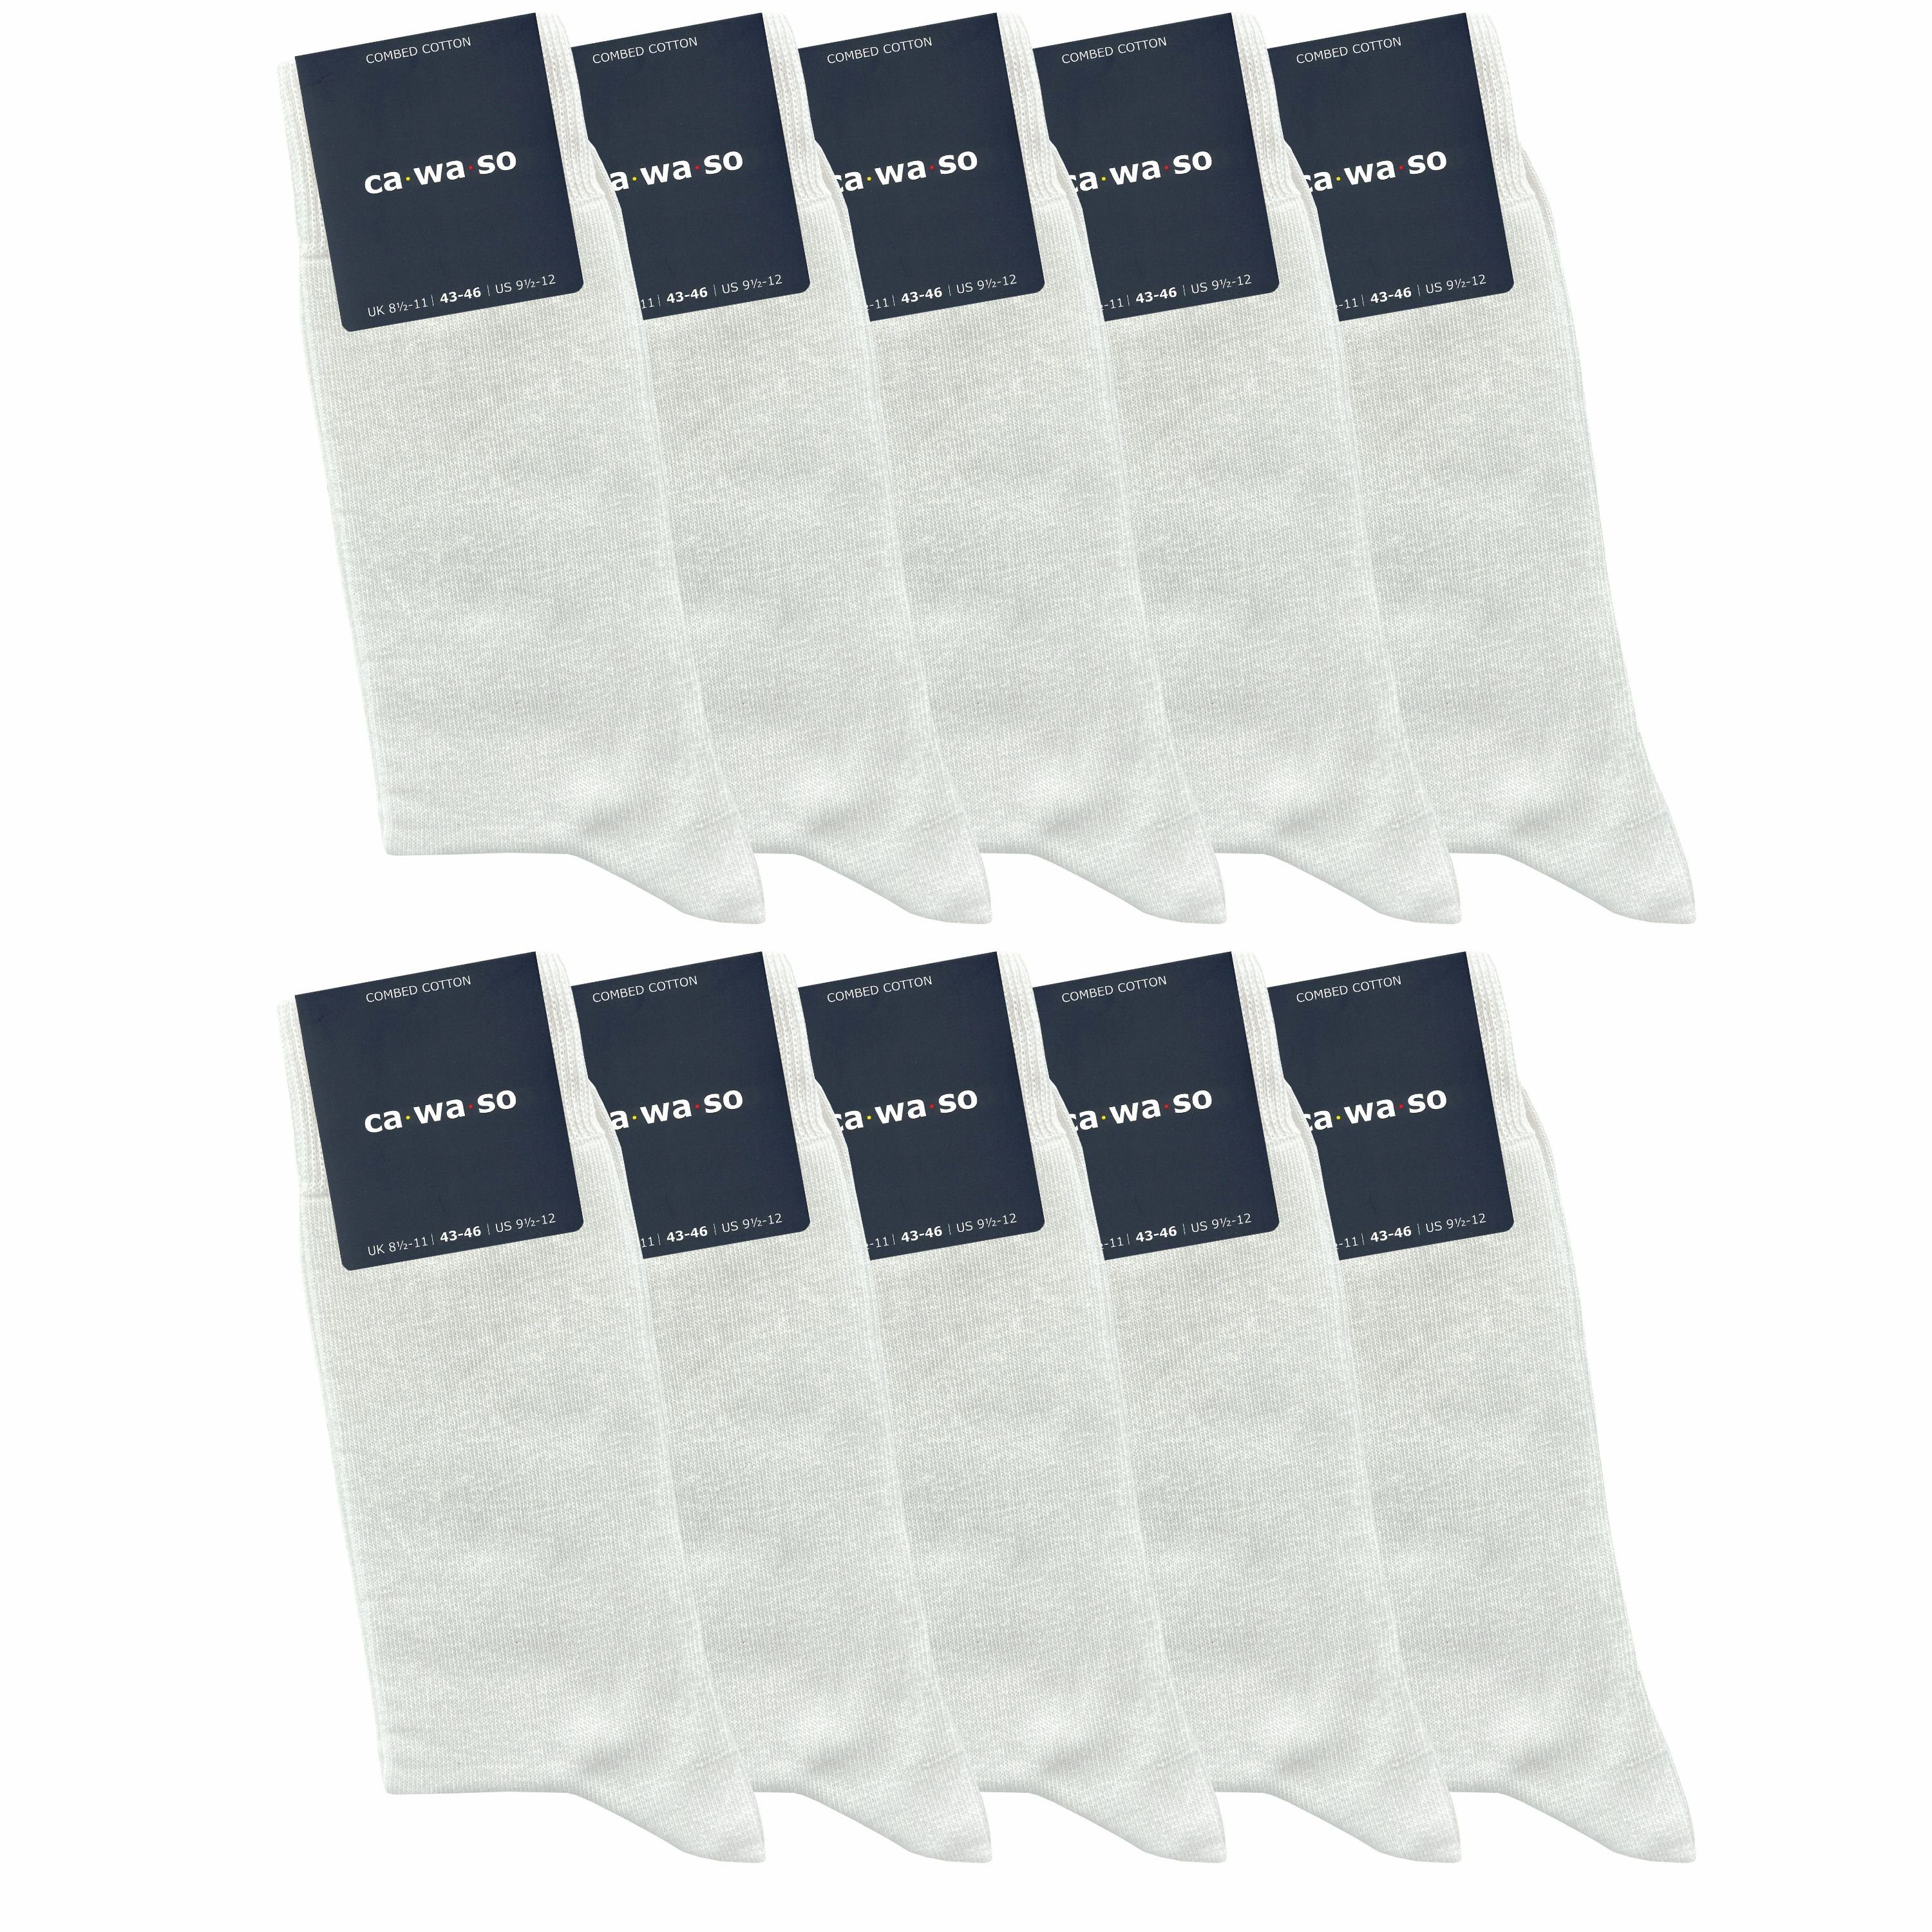 ca·wa·so Socken für Damen & Herren - bequem & weich - aus doppelt gekämmter Baumwolle (10 Paar) Socken in schwarz, bunt, grau, blau und weiteren Farben weiß